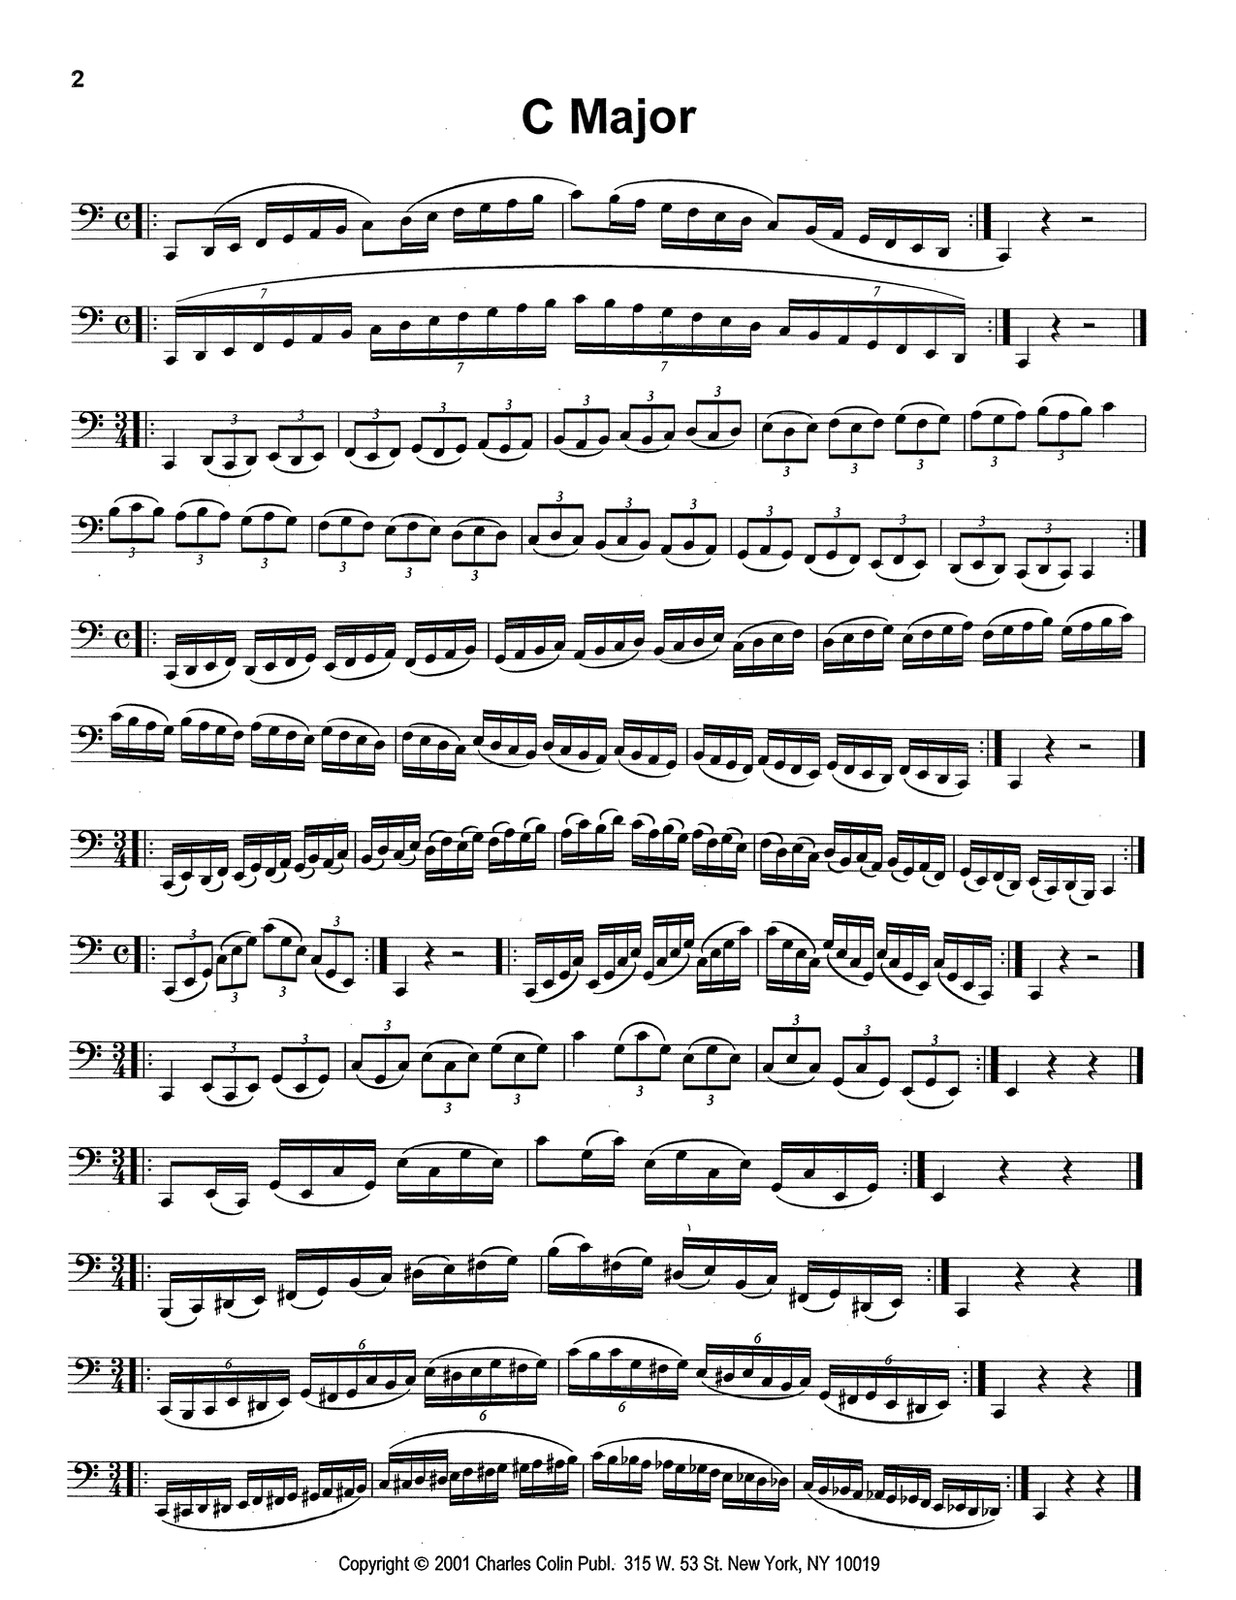 f minor triad bass clef